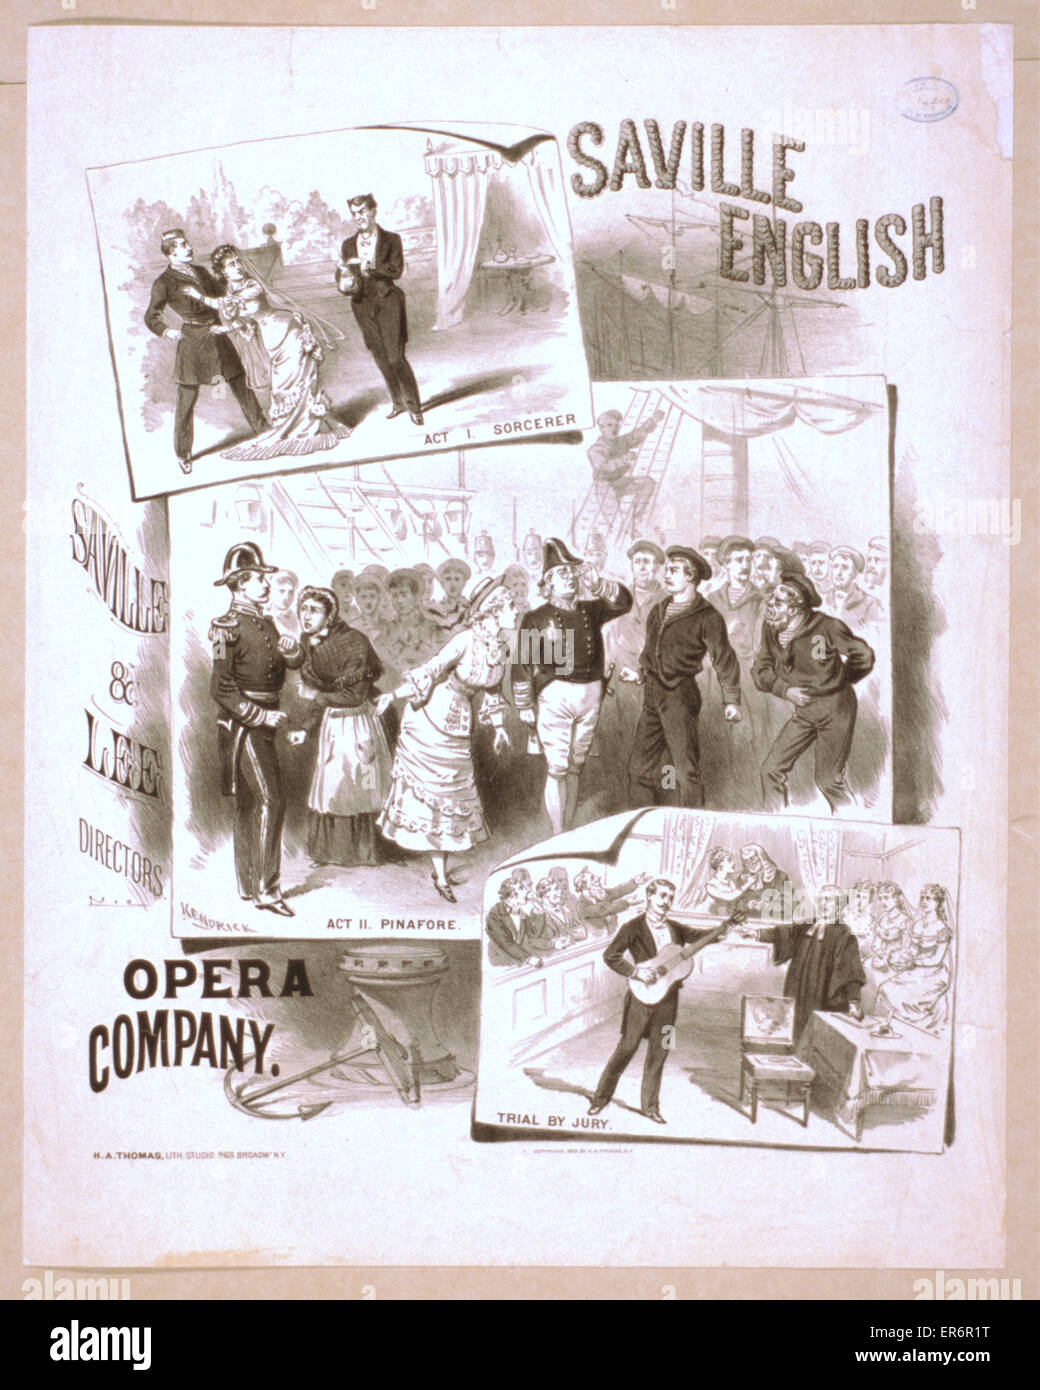 Saville English Opera Company. Date c1879. Stock Photo